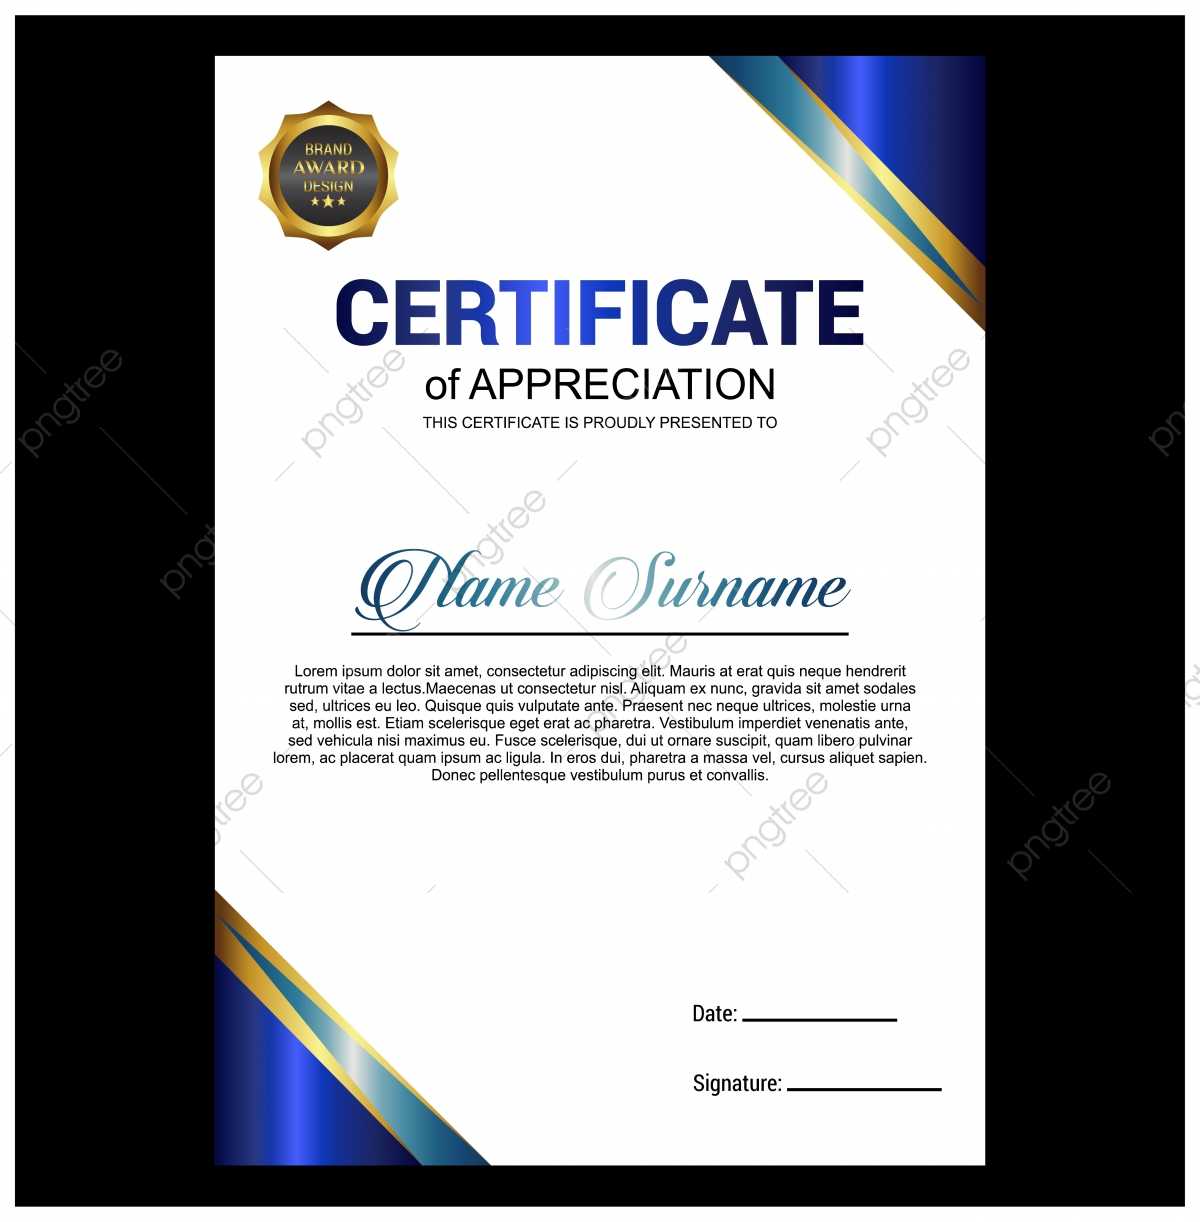 Creative Certificate Of Appreciation Award Template With With Free Certificate Of Appreciation Template Downloads